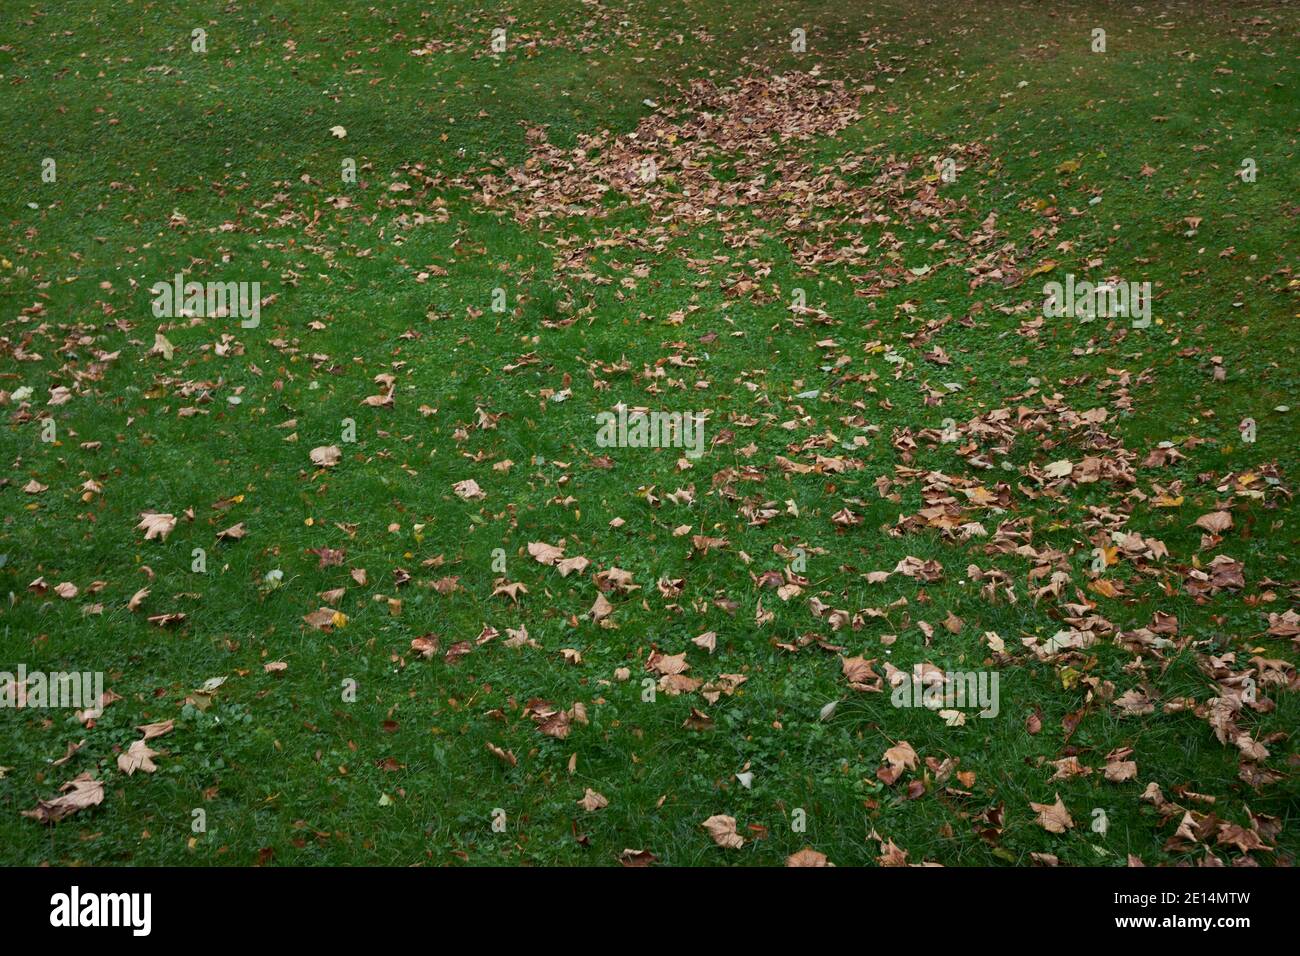 Auf einer gruenen Rasenflaeche liebt braunes Herbstlaub, das zentralperspektivisch nach hinten auslaeuft Foto Stock